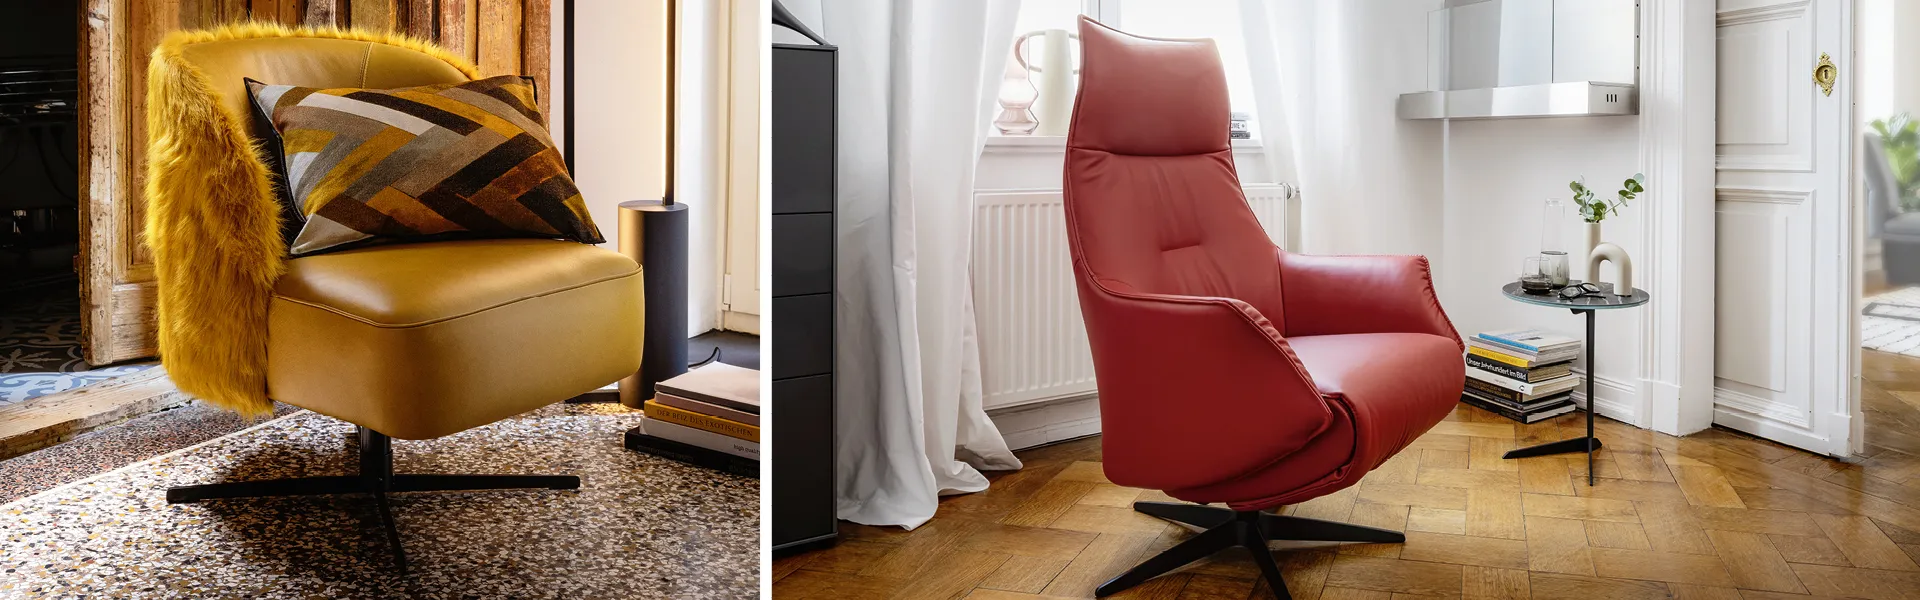 Sessel gibt es in vielen verschiedenen Designs. Welcher Stil ist Ihr Favorit?